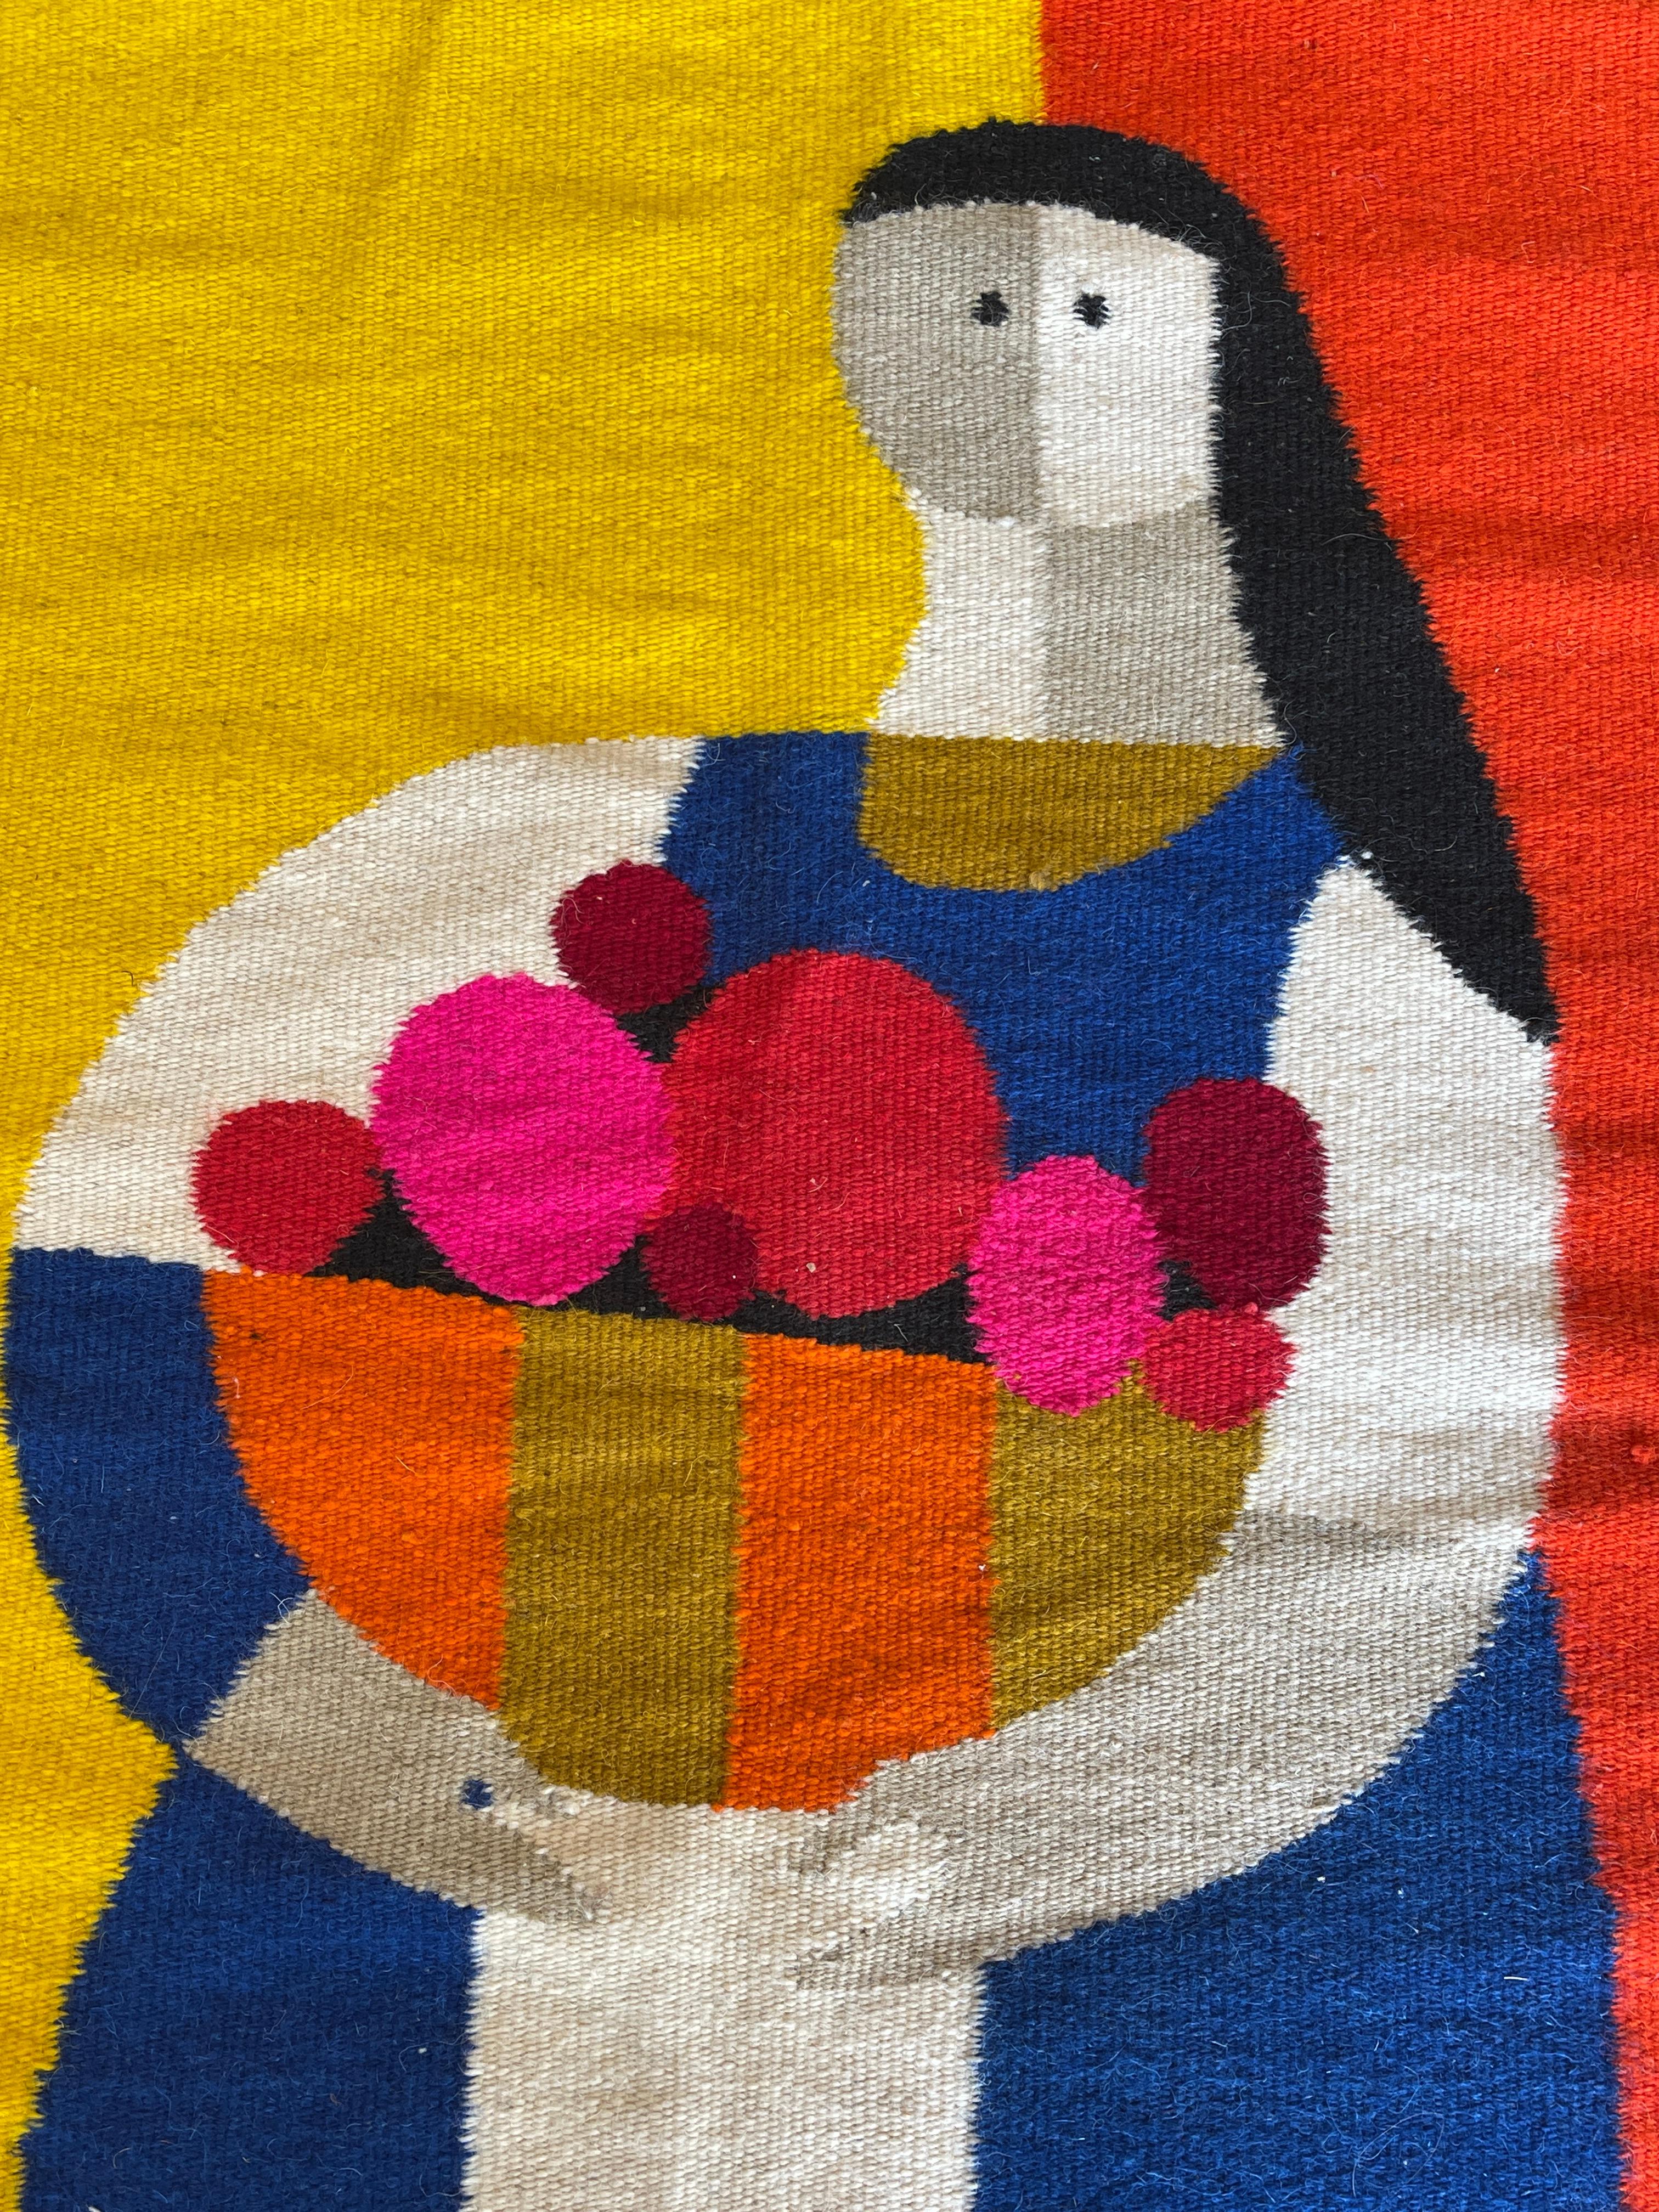 Superbe tapisserie murale en laine vibrante Campasena conçue par Evelyn Ackerman